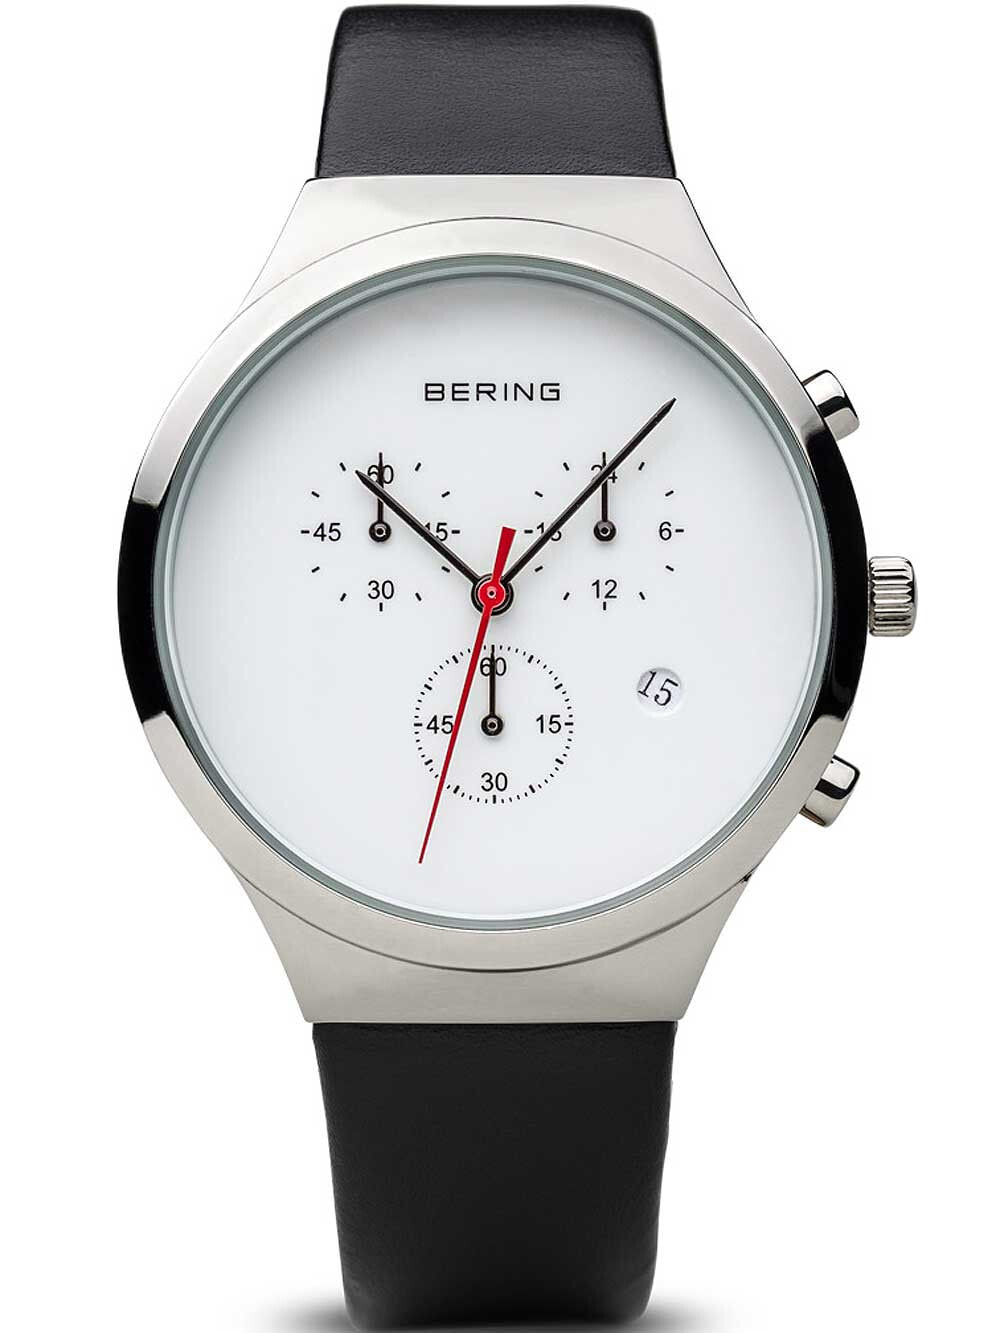 Мужские наручные часы с черным кожаным ремешком  Bering 14736-404 classic ladies watch 36mm 3ATM